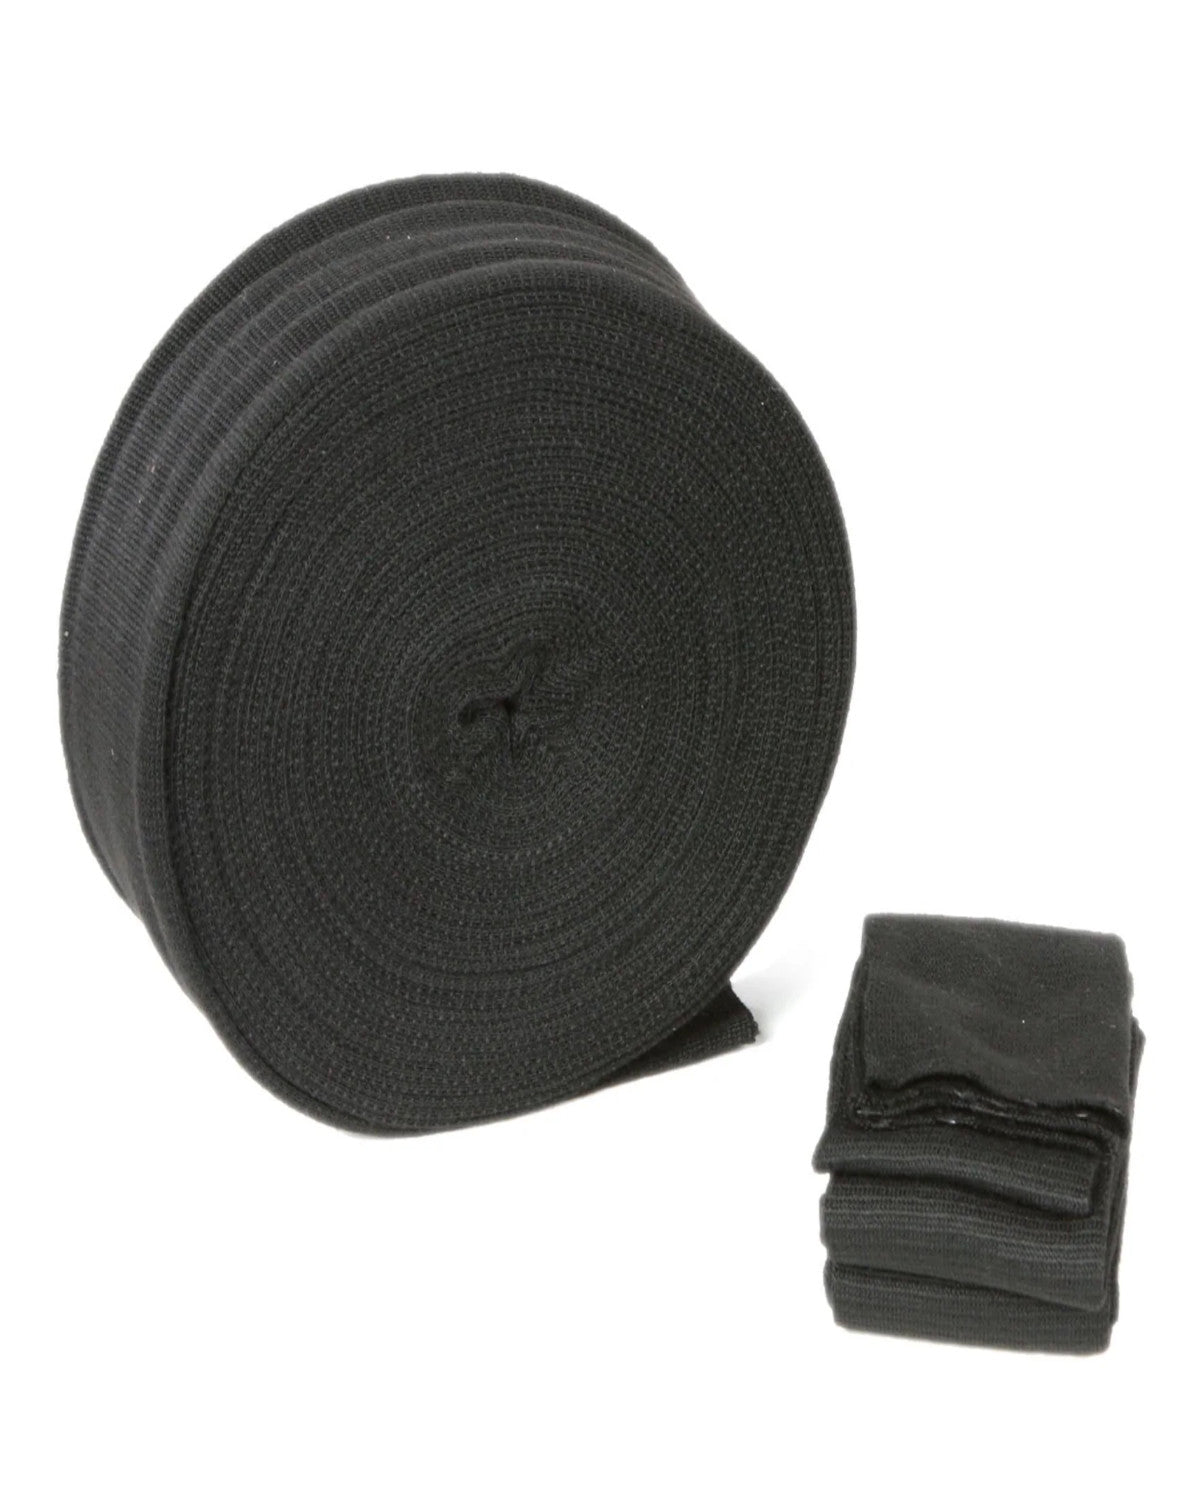 CASHEL Velcro Band Strap Extender Gray